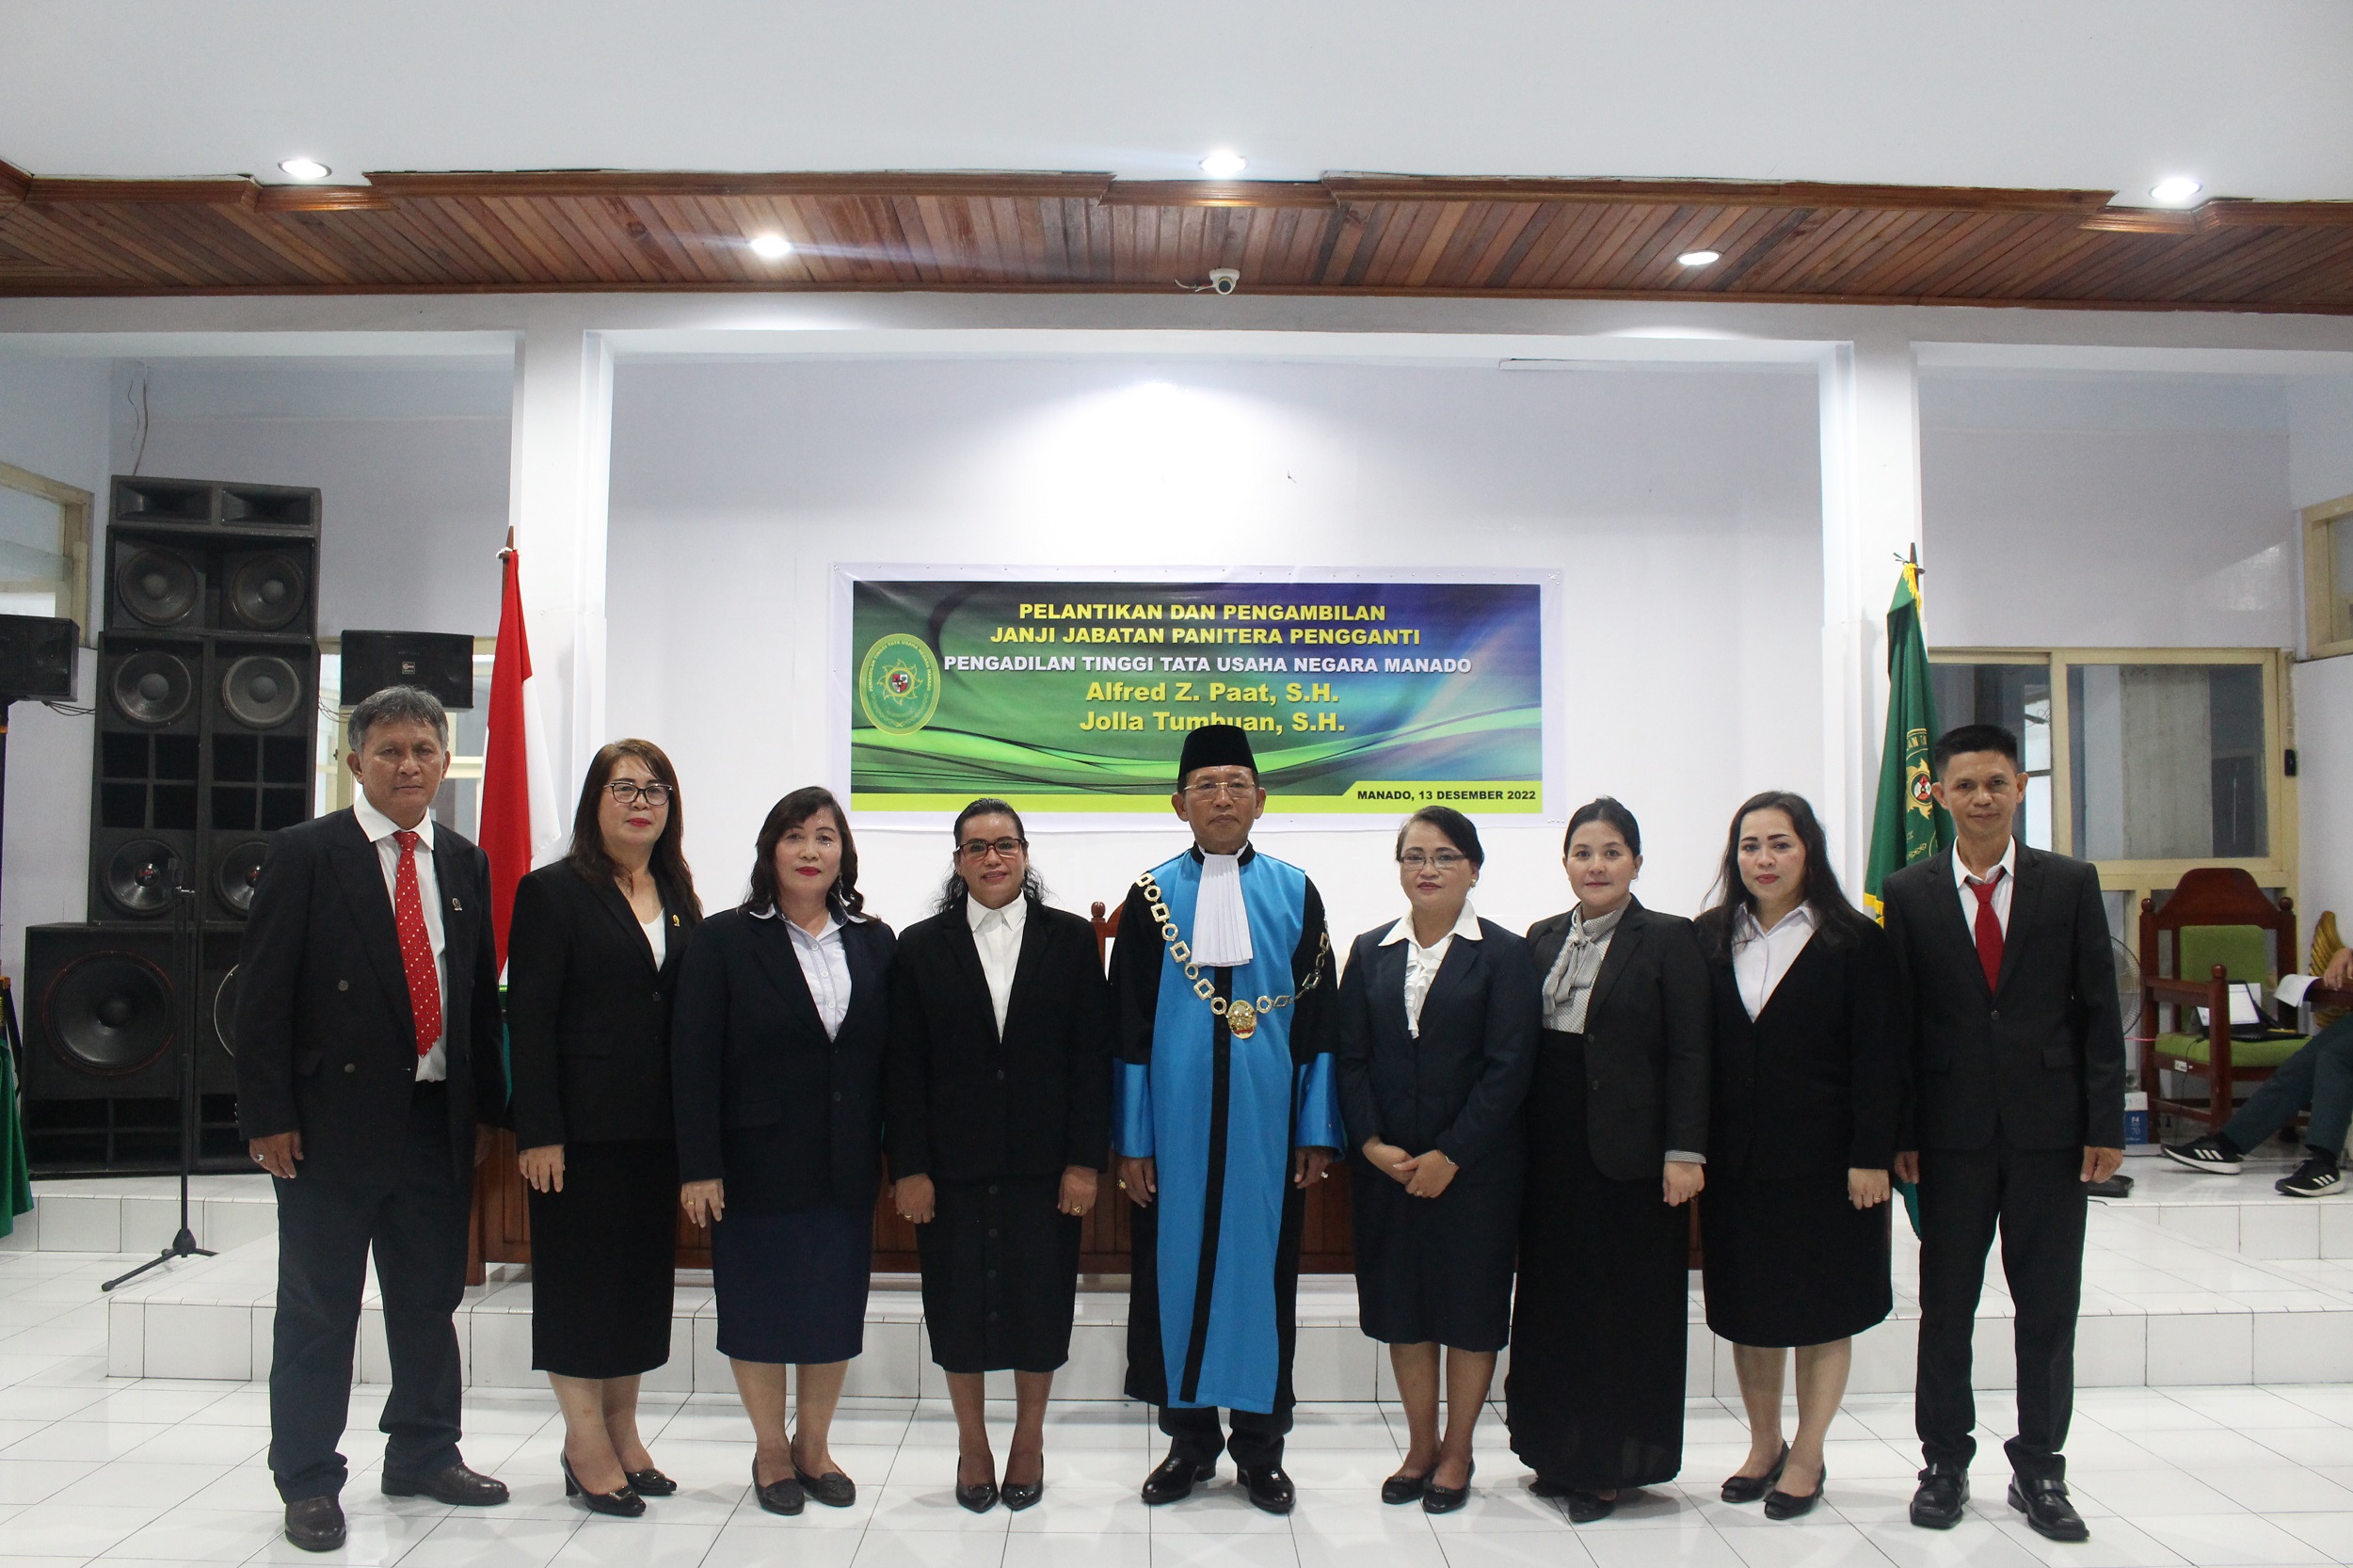 Pelantikan dan Pengambilan Janji Jabatan Pejabat Struktural dan Panitera Pengganti Pengadilan Tinggi Tata Usaha Negara Manado